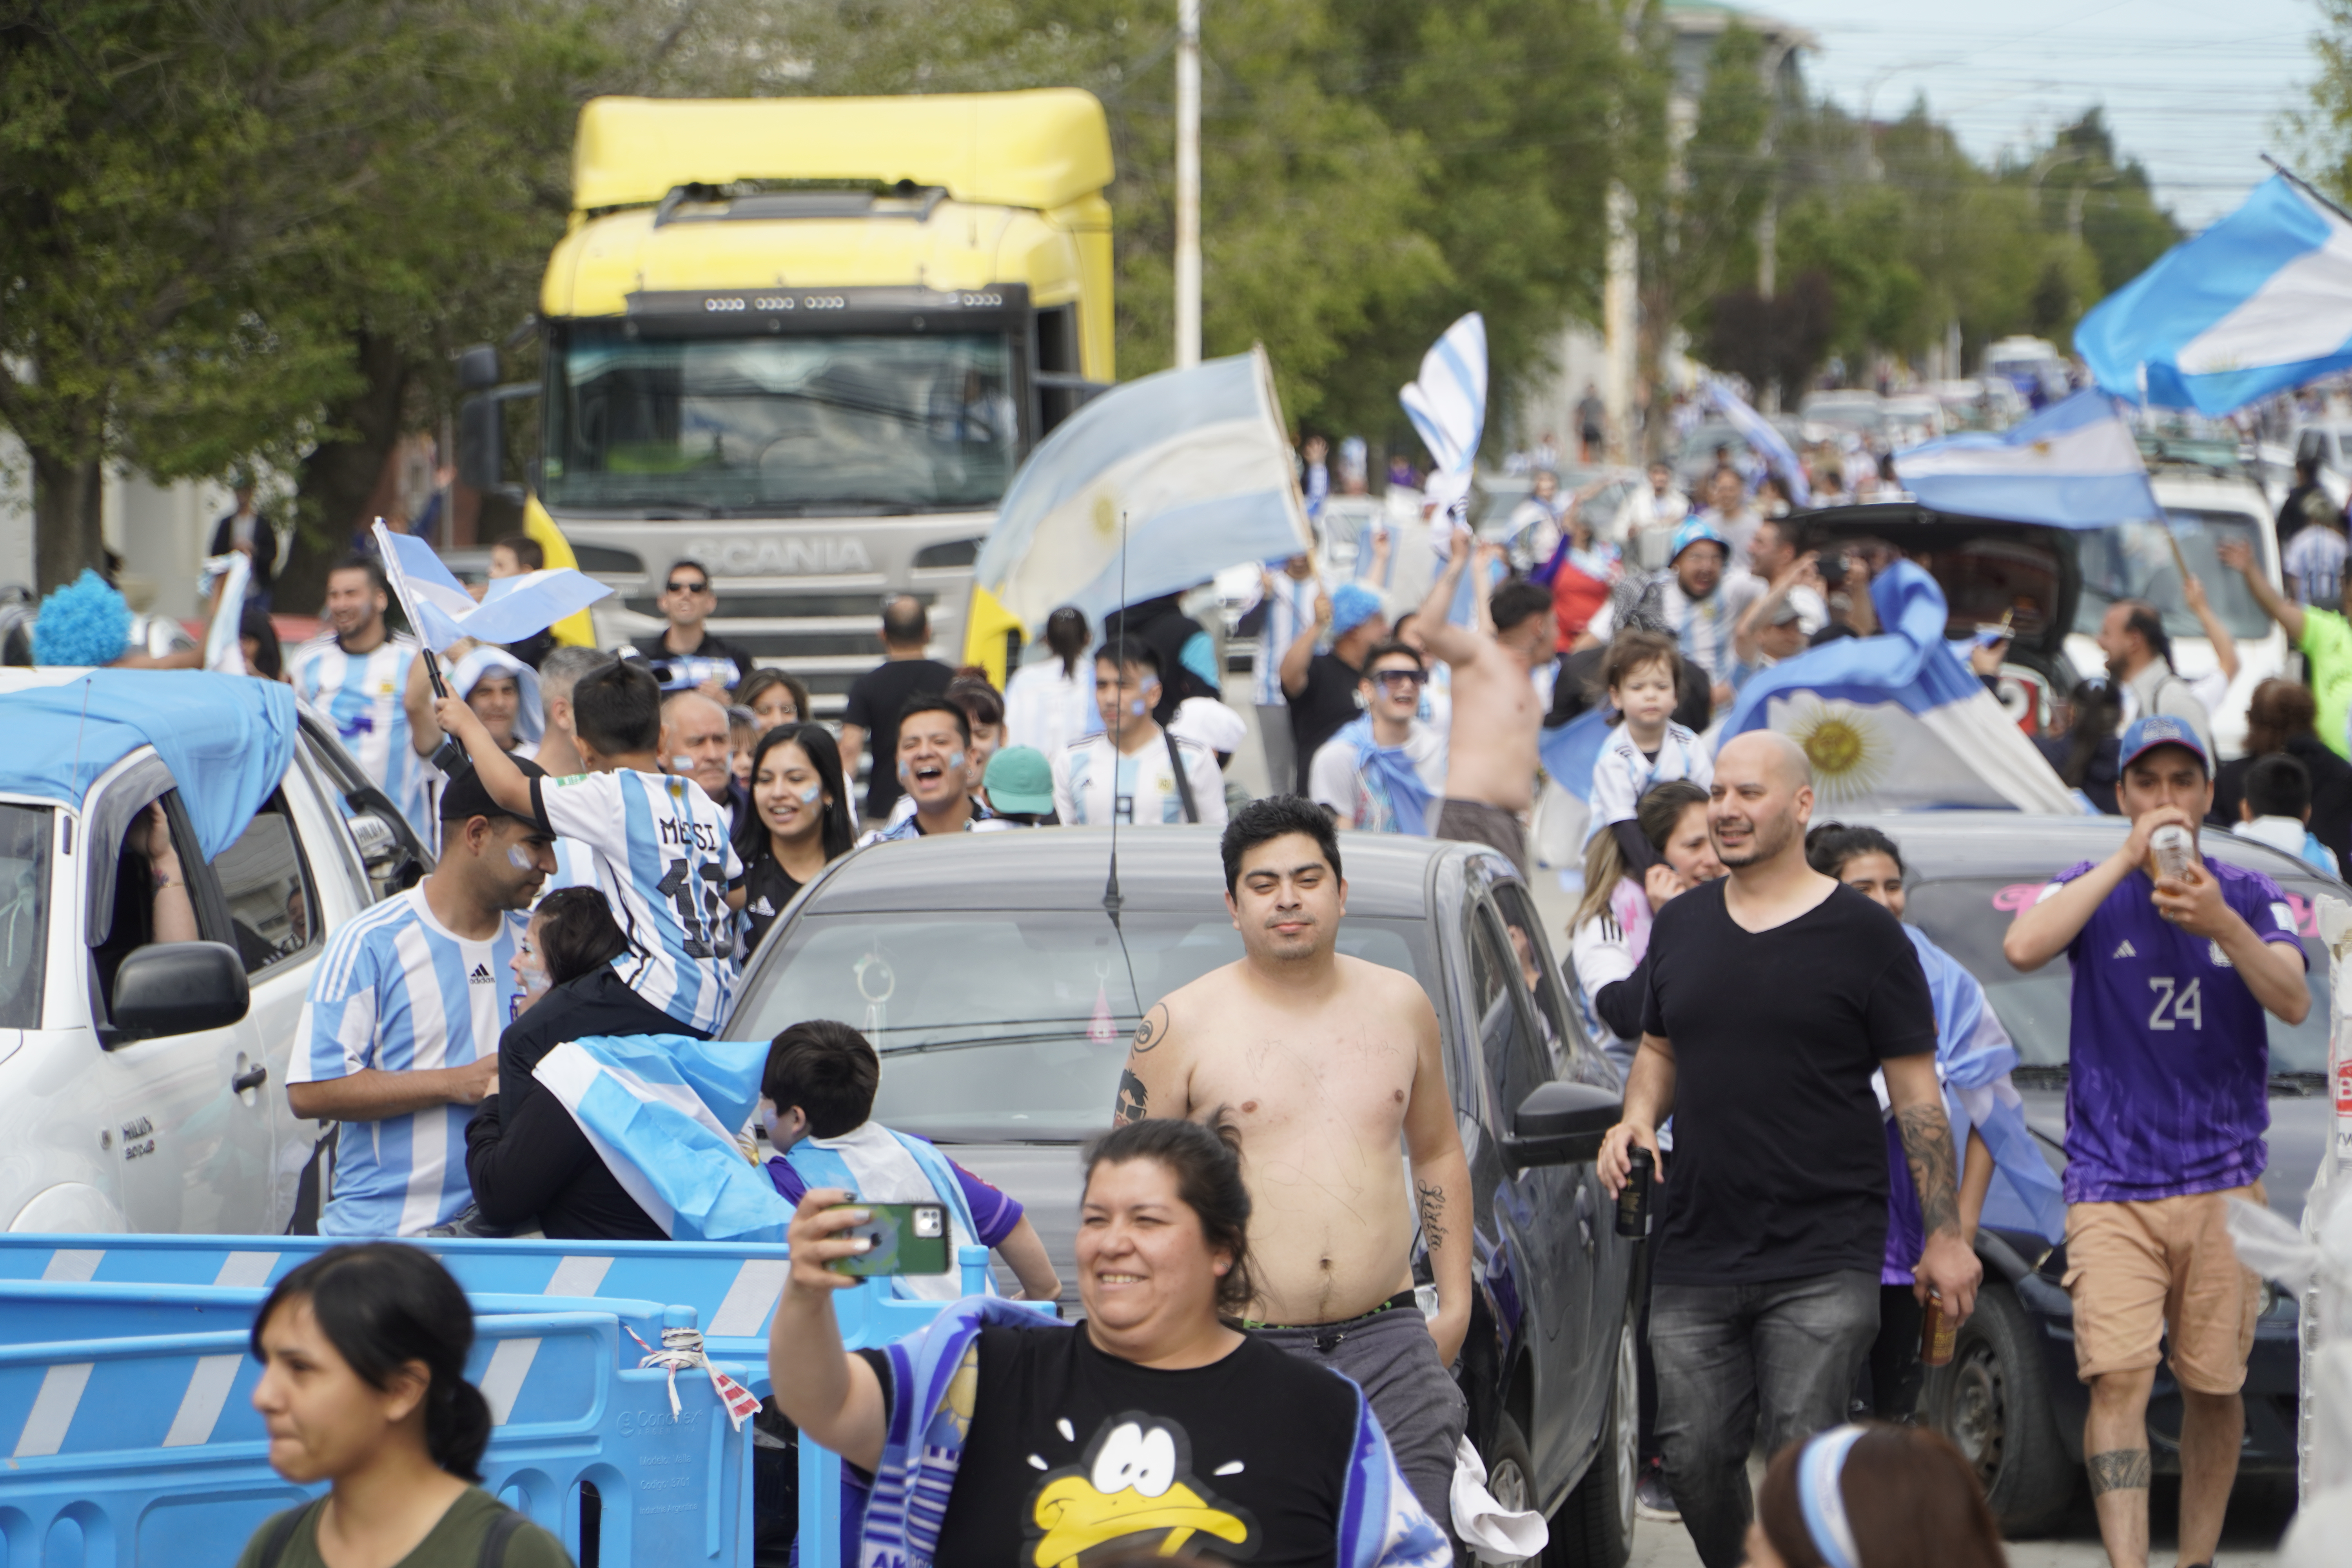 El festejo fue en todo el país: aquí, una imagen de la caravana de autos en Río Gallegos, Santa Cruz 